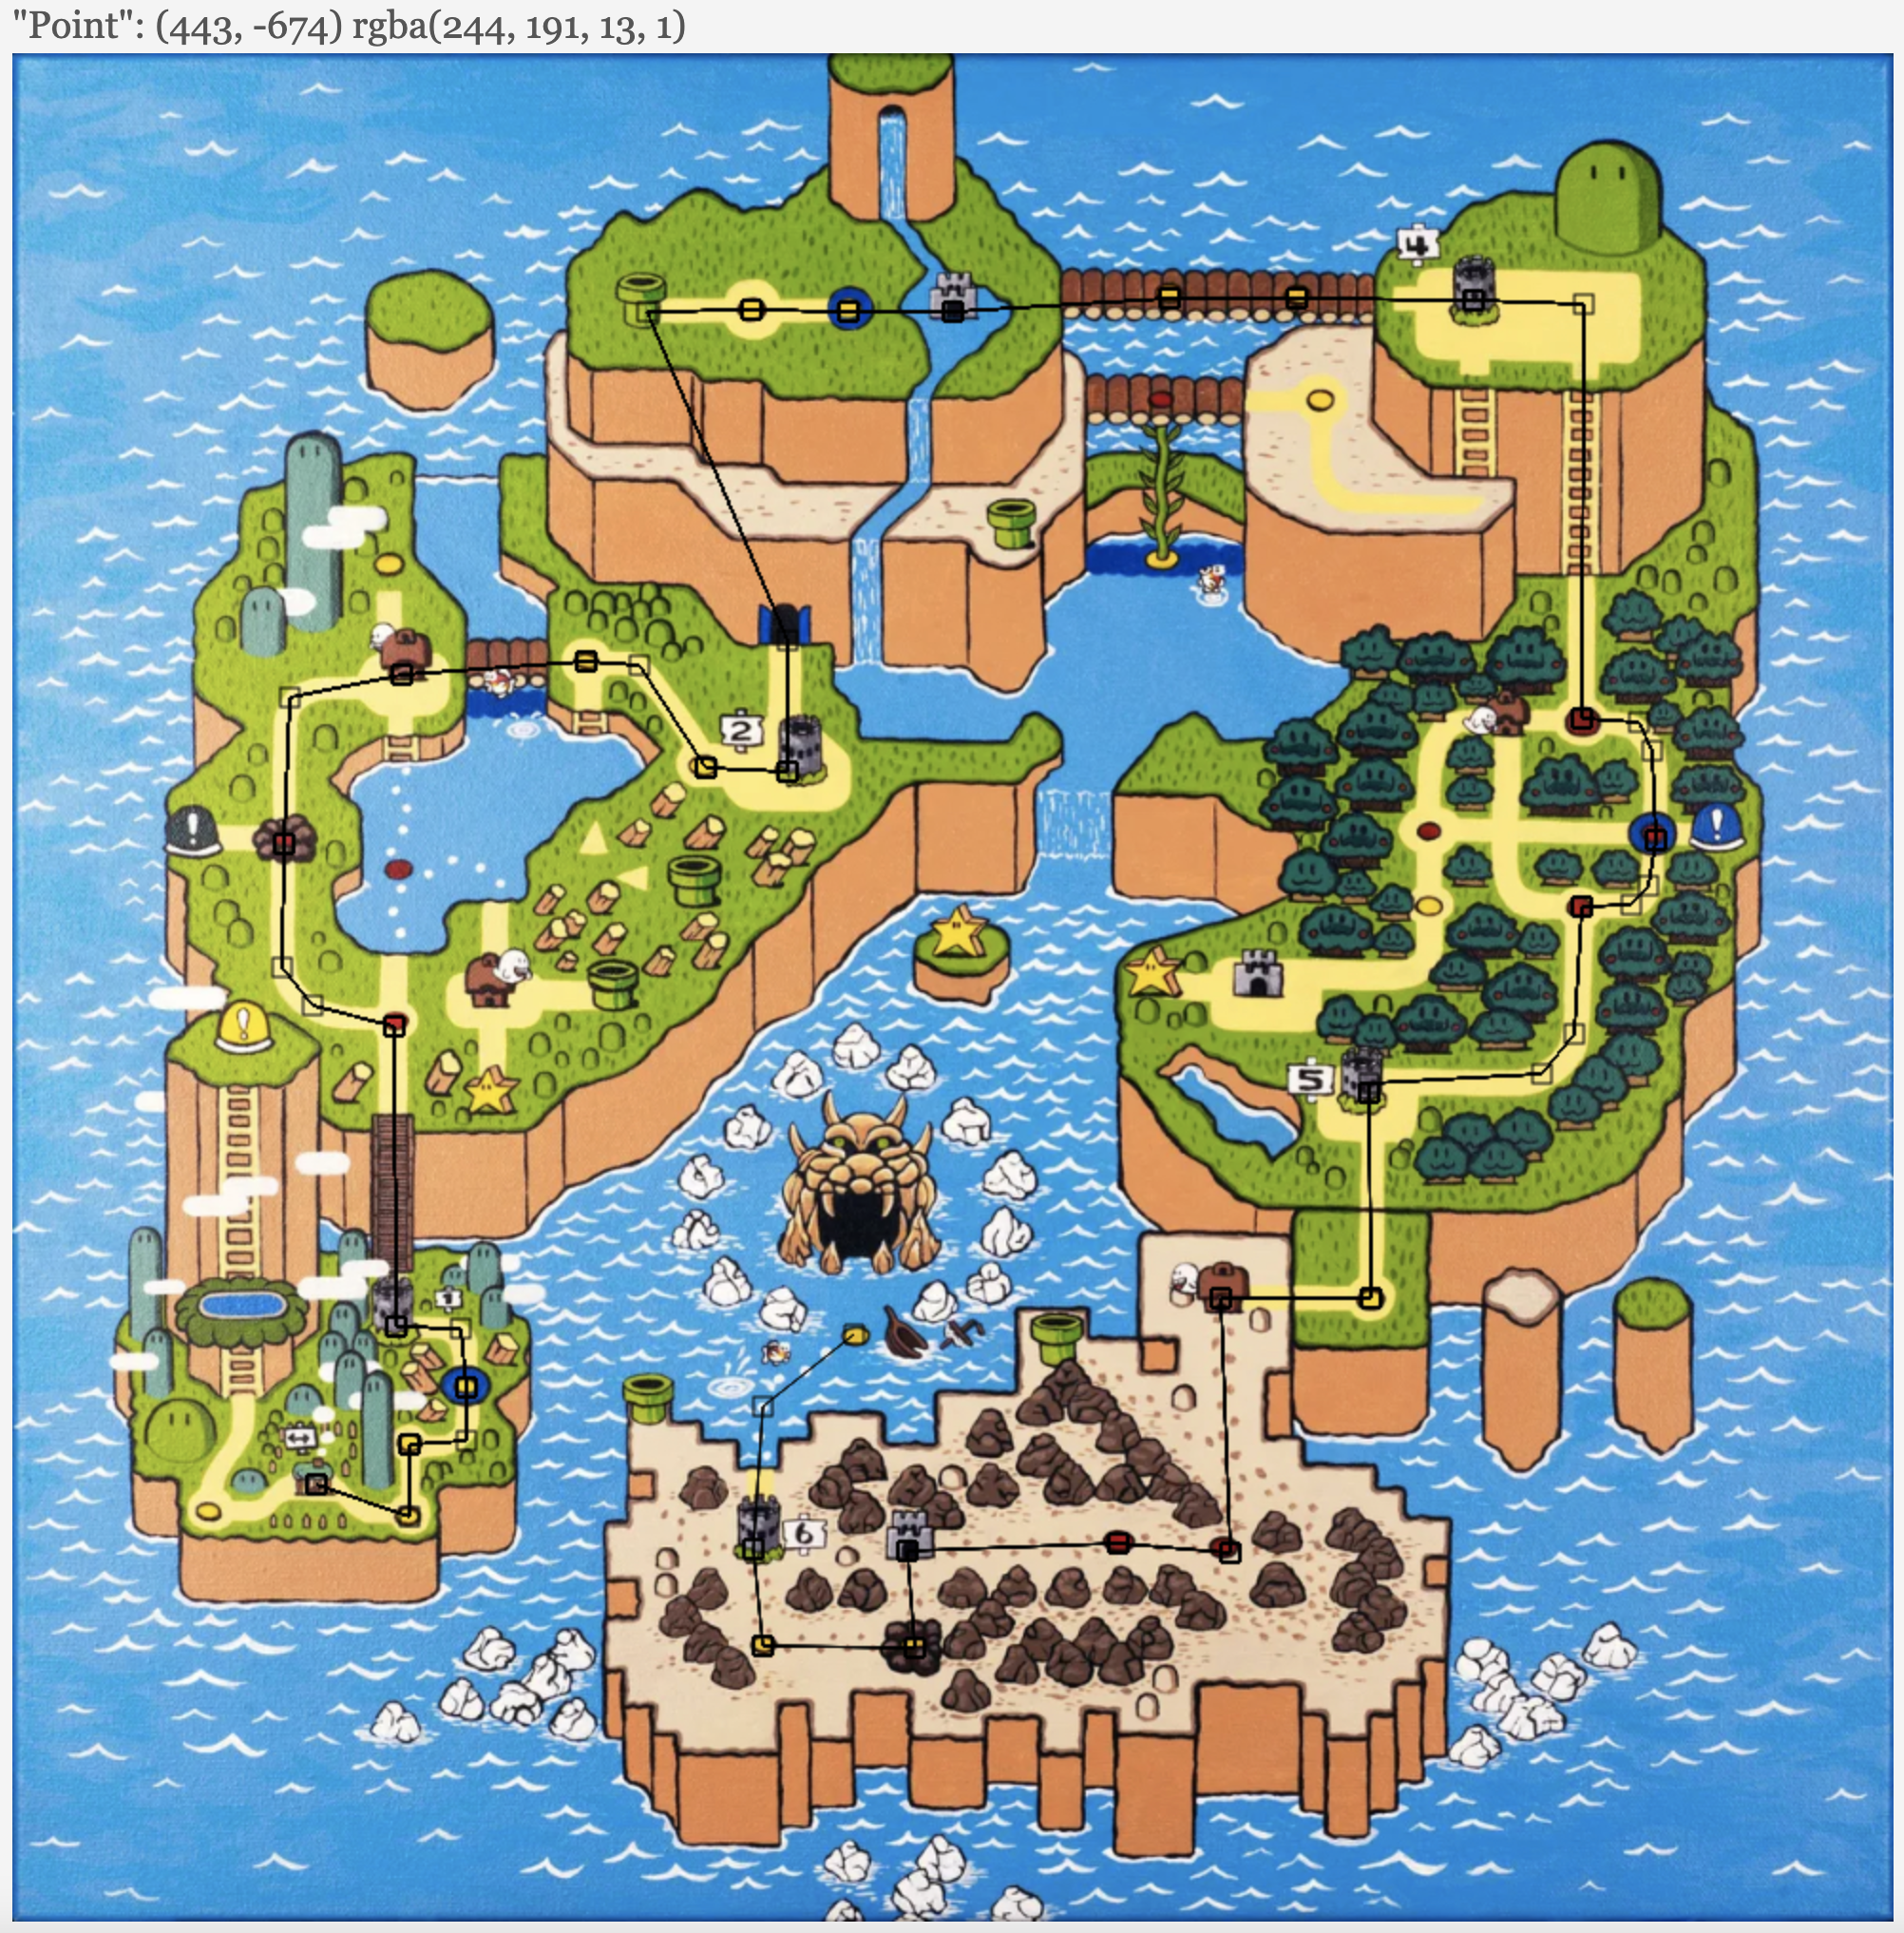 Mario's path plotter on the map